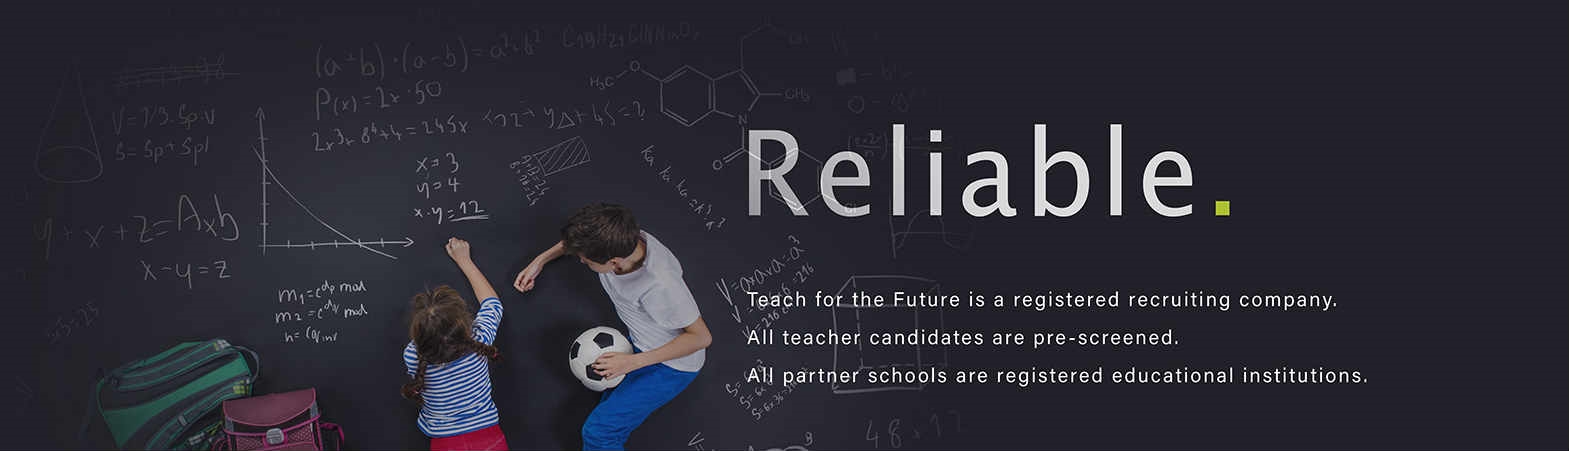 一站式的teach futureESL Teacher,蔚来教育供应teach future,全